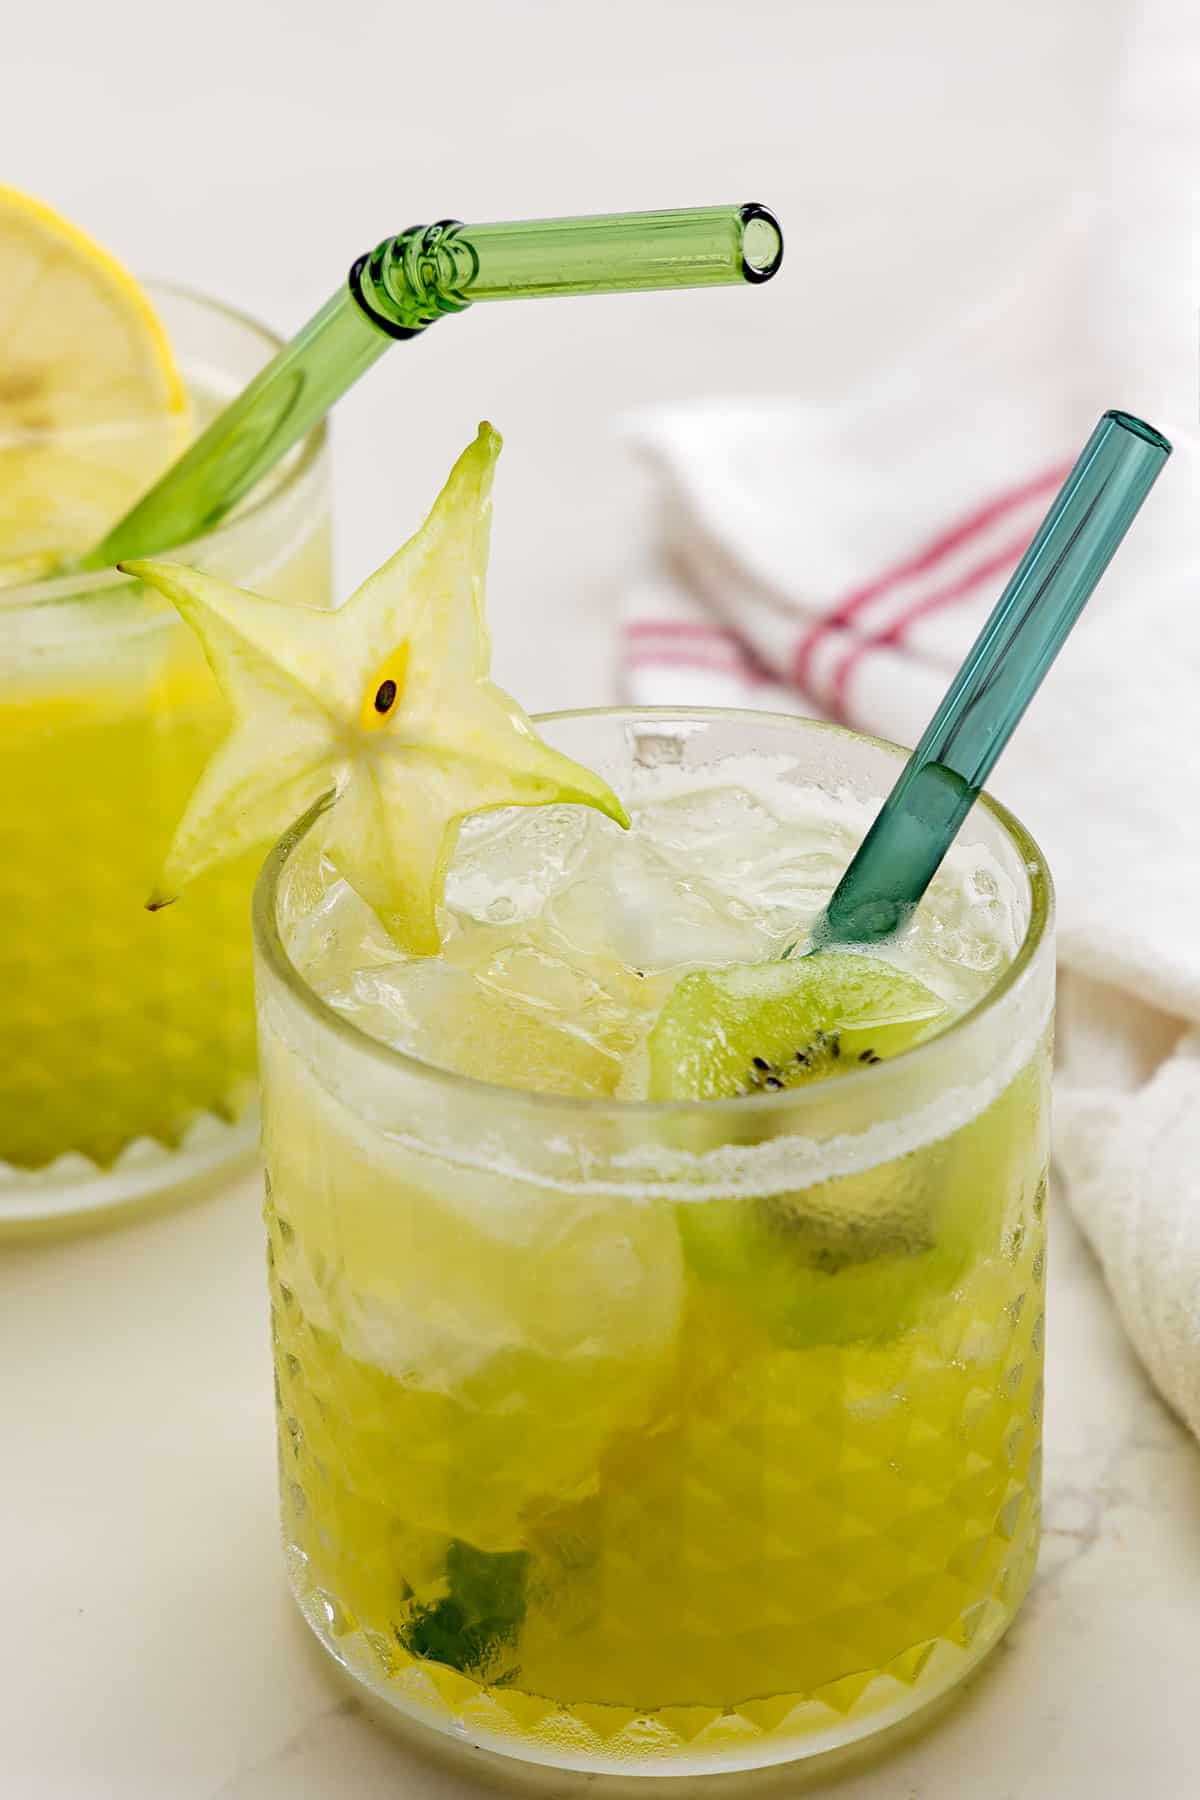 Starbucks-inspired lemonade kiwi starfruit refresher mocktail.